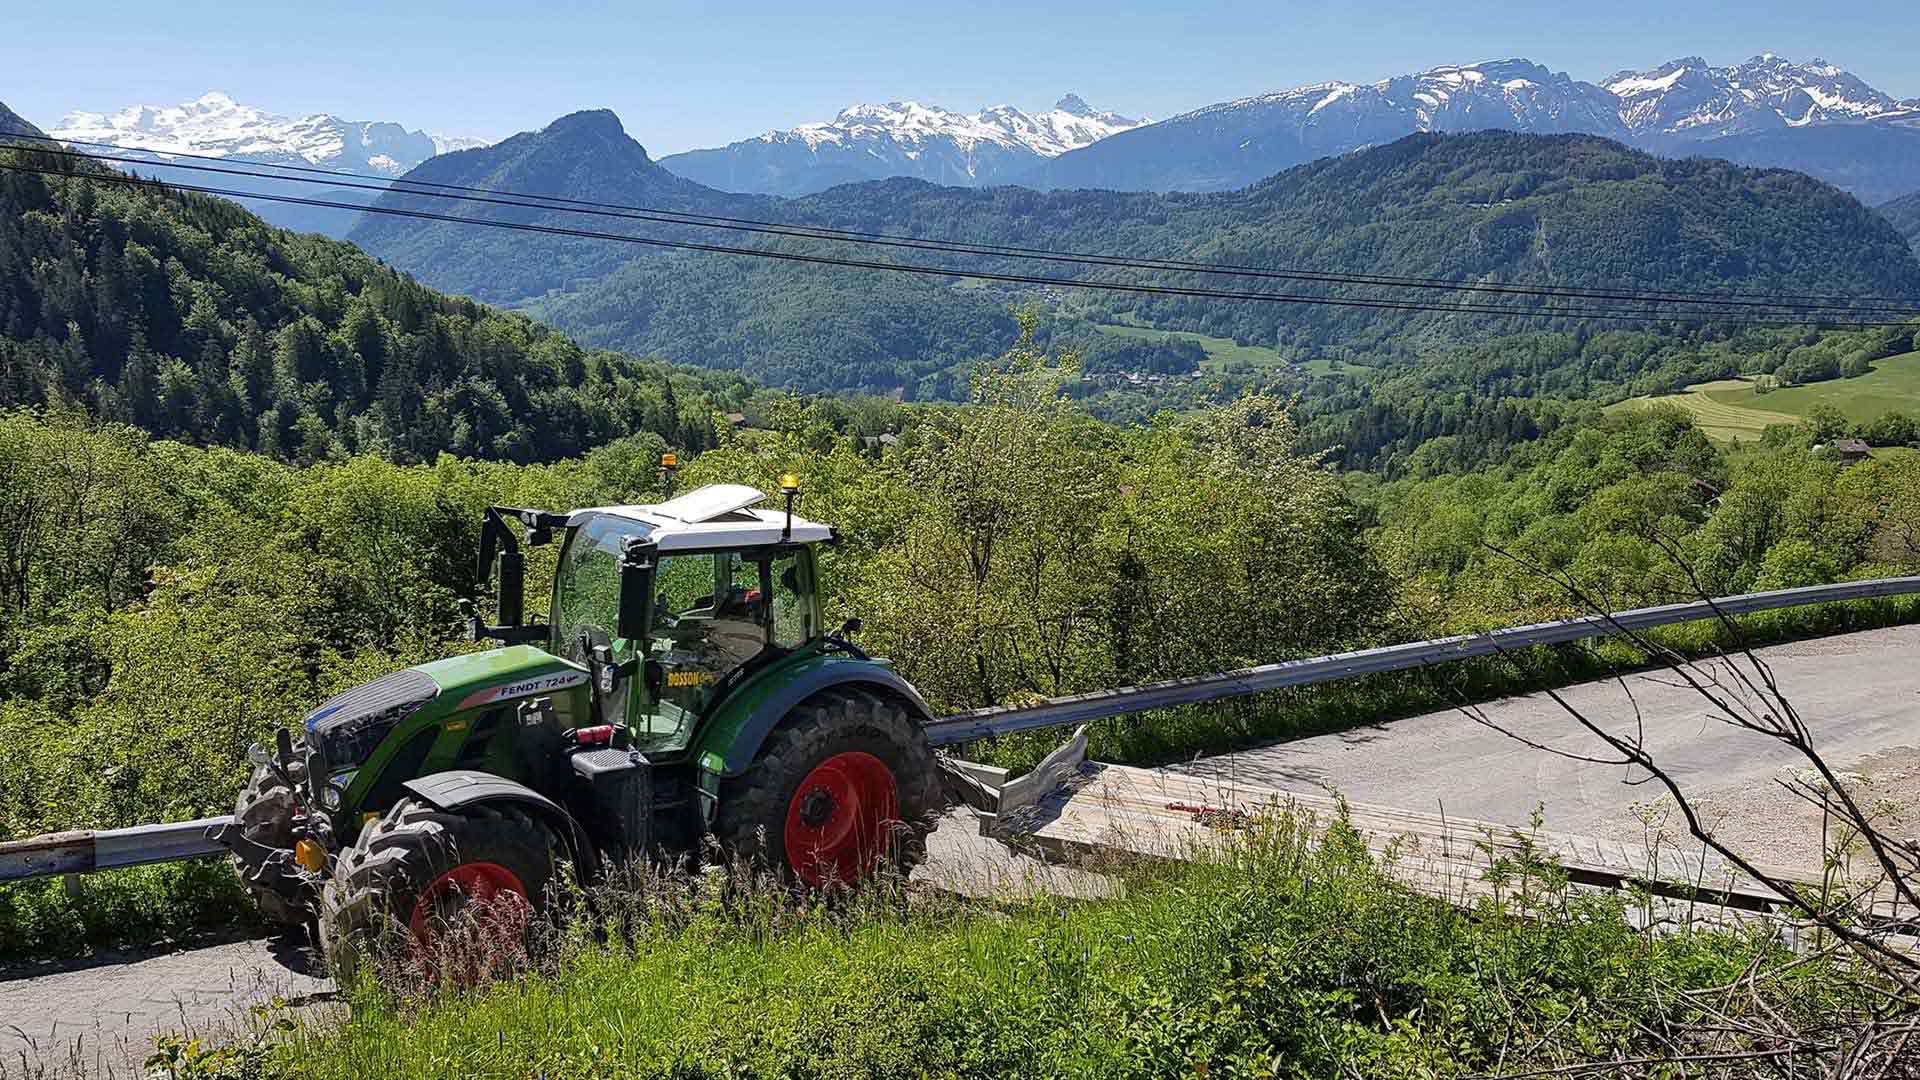 Tracteur Marjollet TP pour travaux agricoles en Haute-Savoie